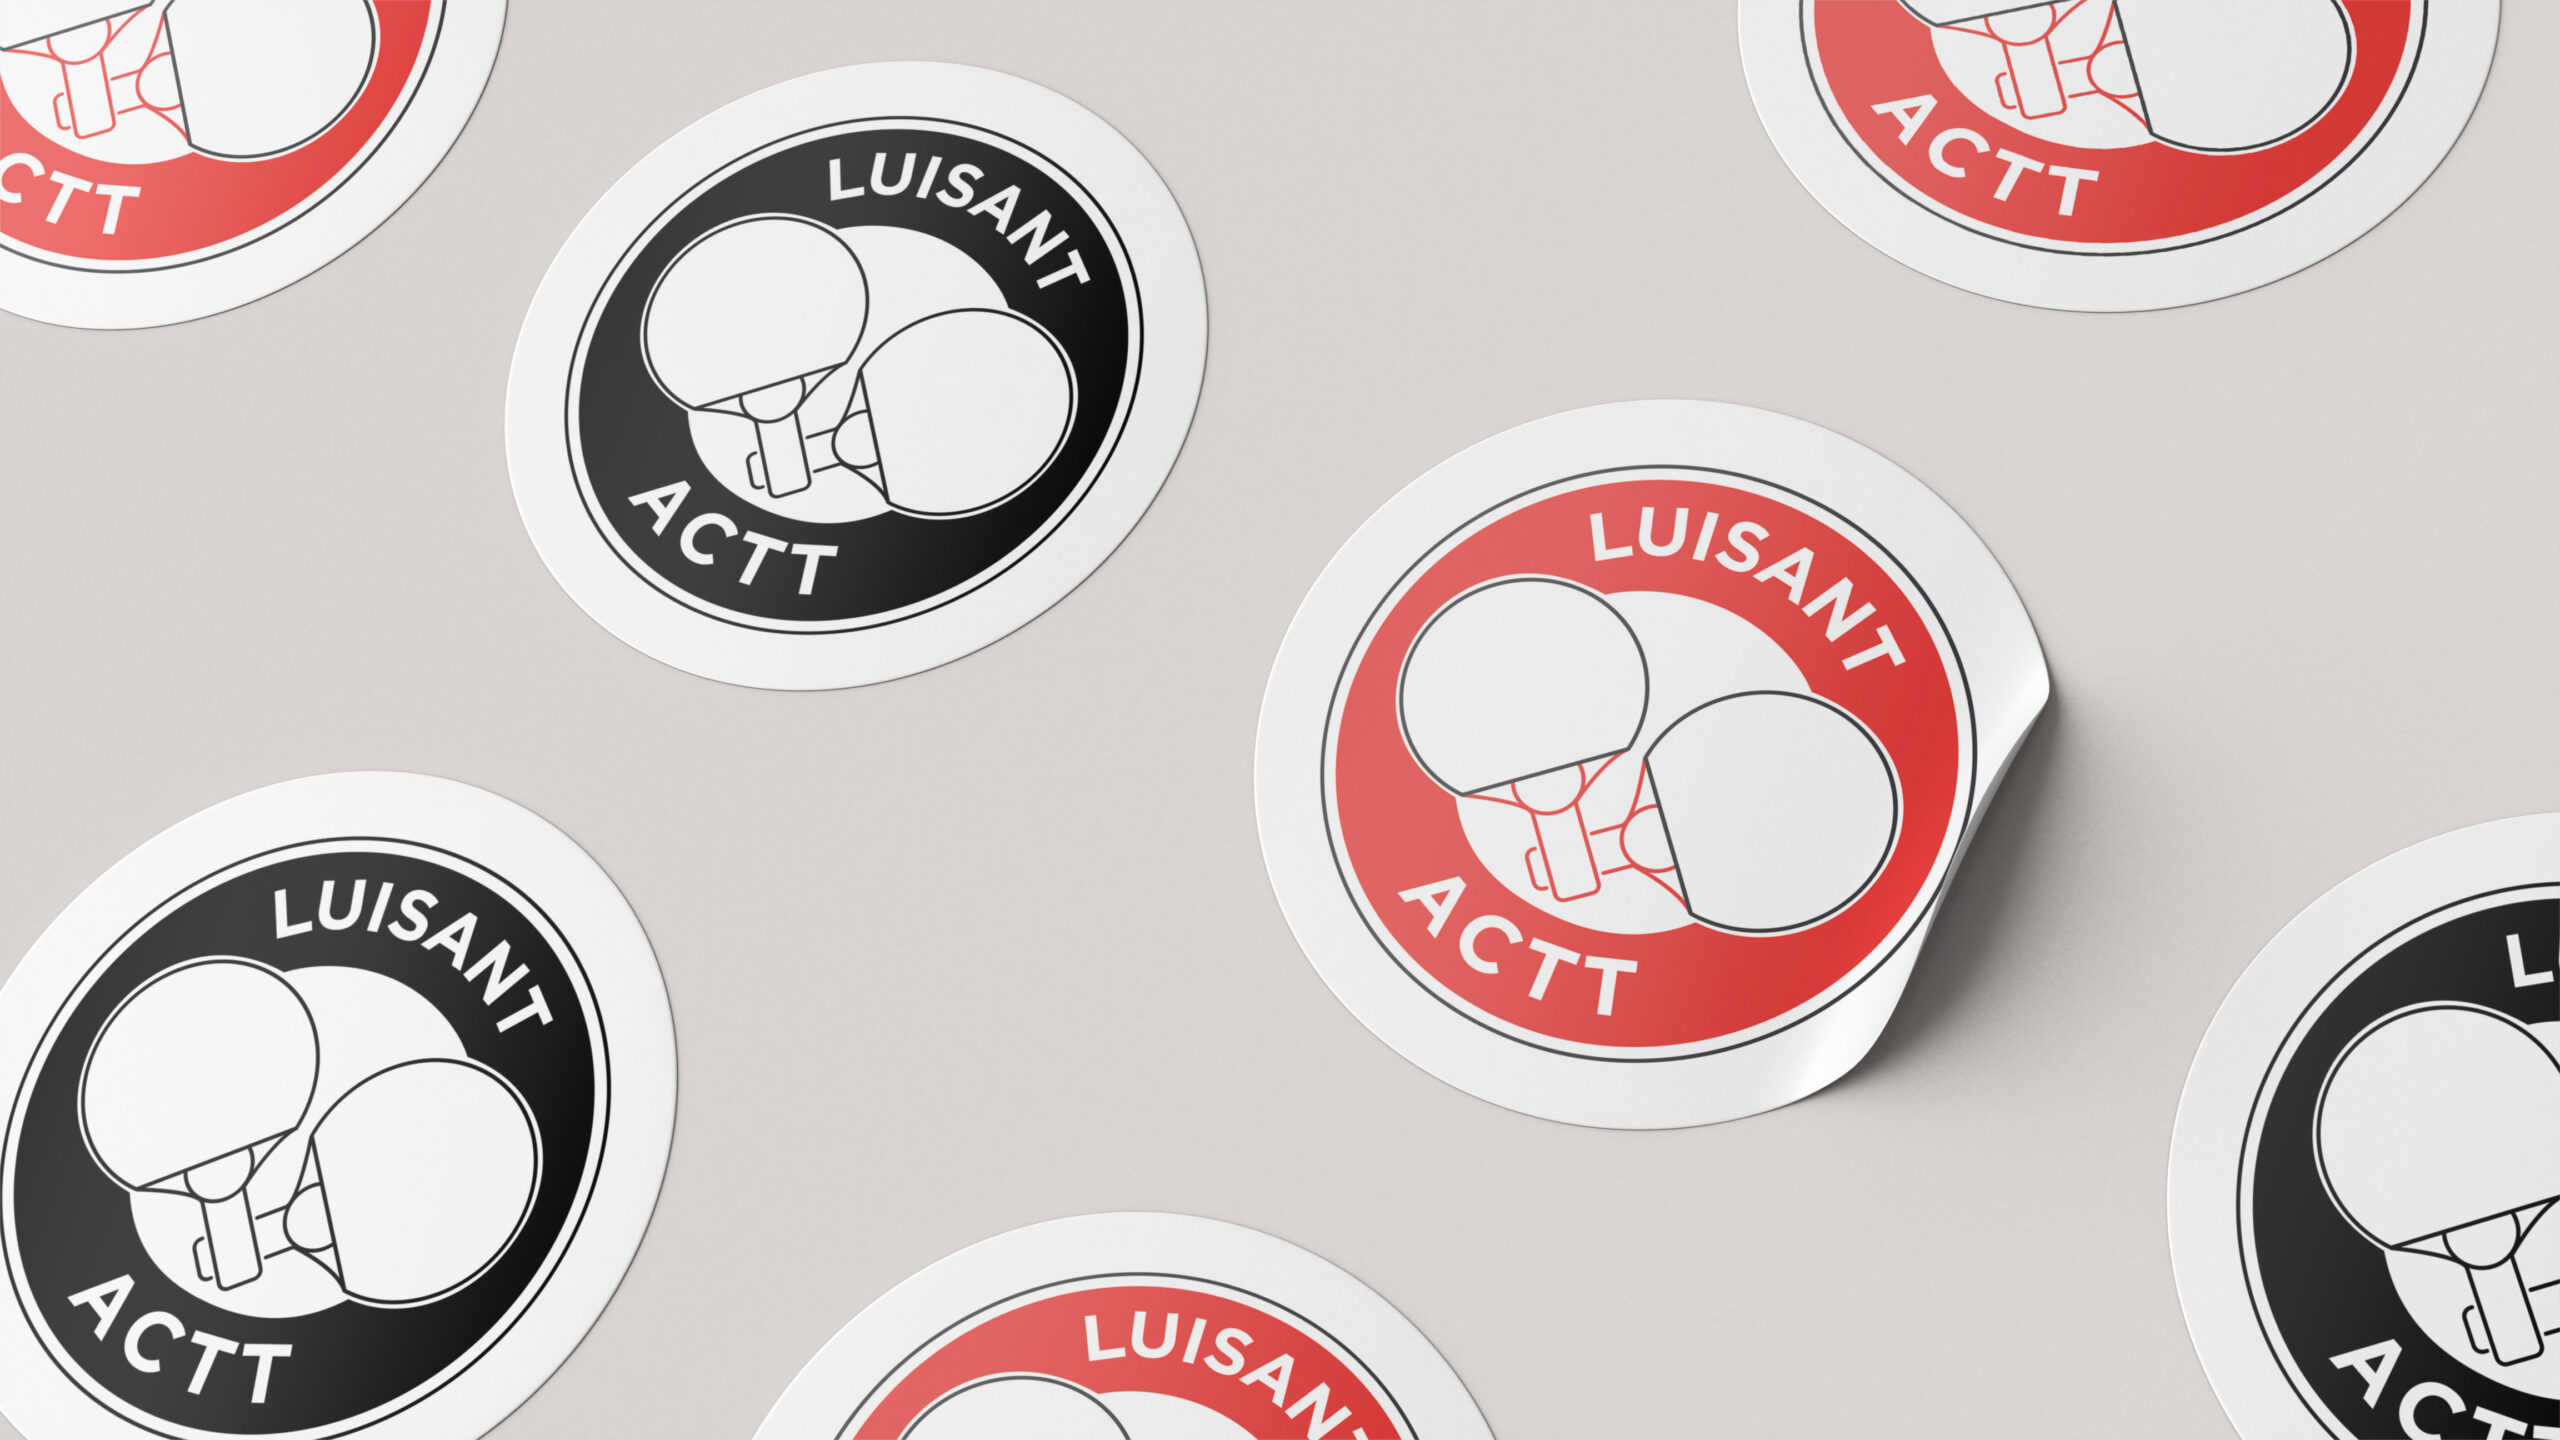 stickers_luisant